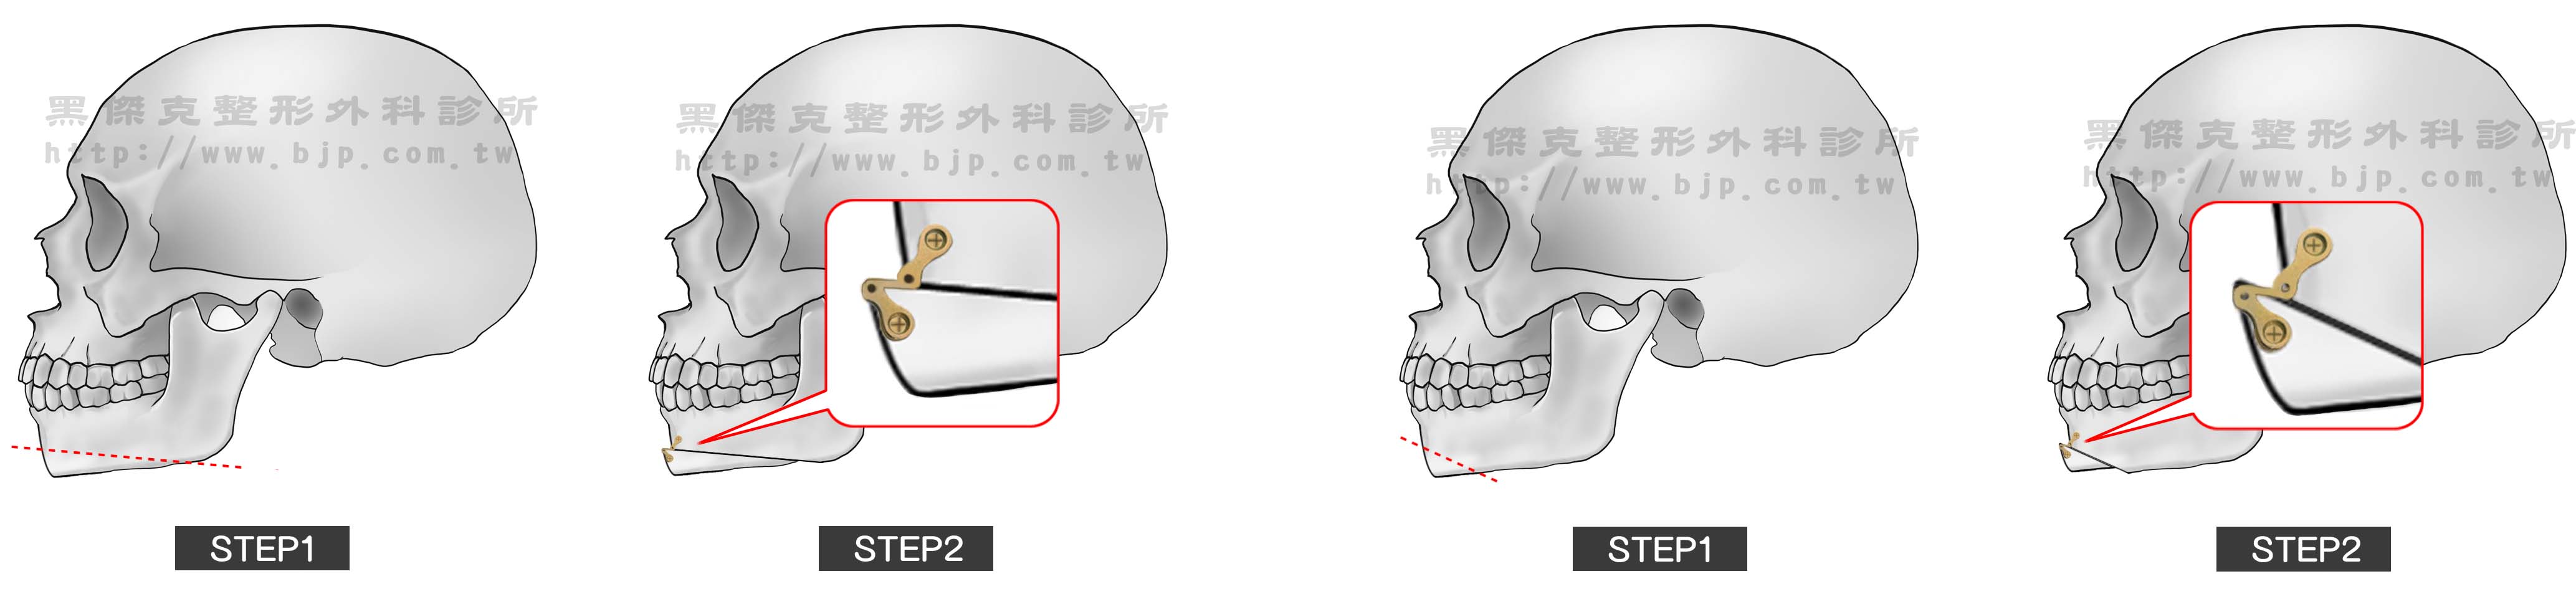 下巴截骨術,把下巴骨(下頷骨)橫向切開,將下巴骨下半段向前移位來增加下巴突出,以金屬骨釘和骨板固定後,使下巴骨於新位置癒合,達到改正下巴後縮的效果。